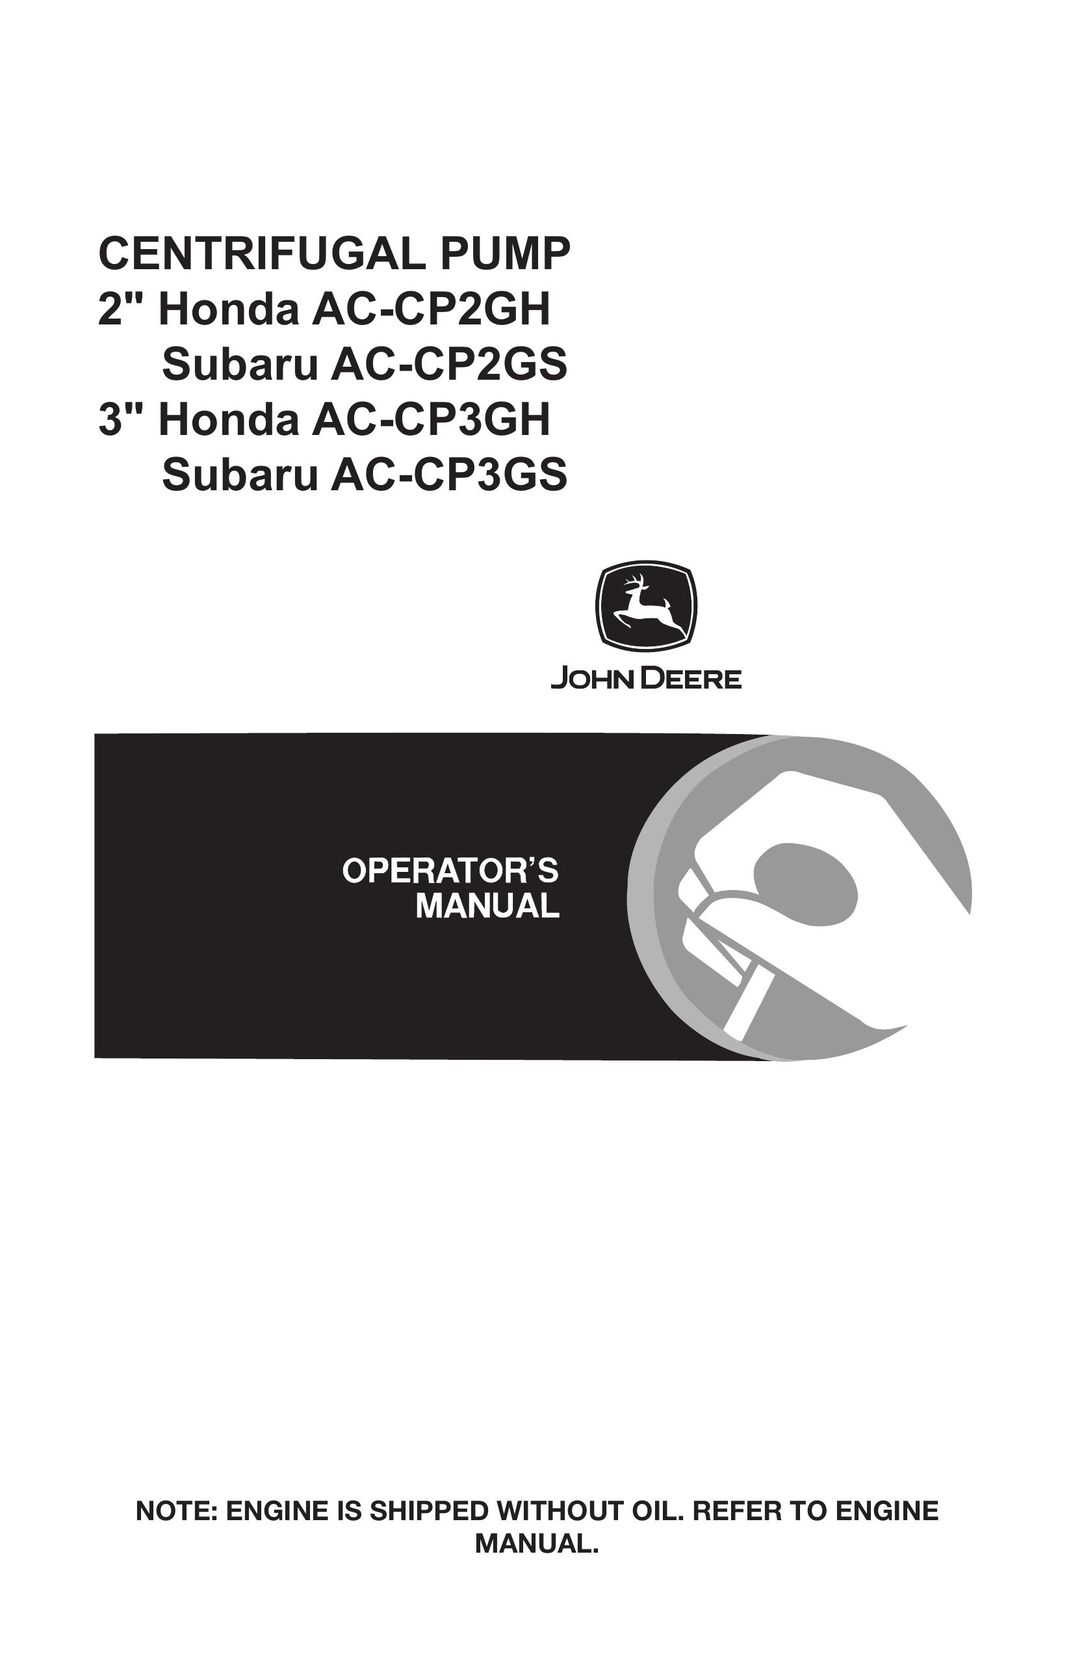 John Deere AC-CP2GS Water Pump User Manual